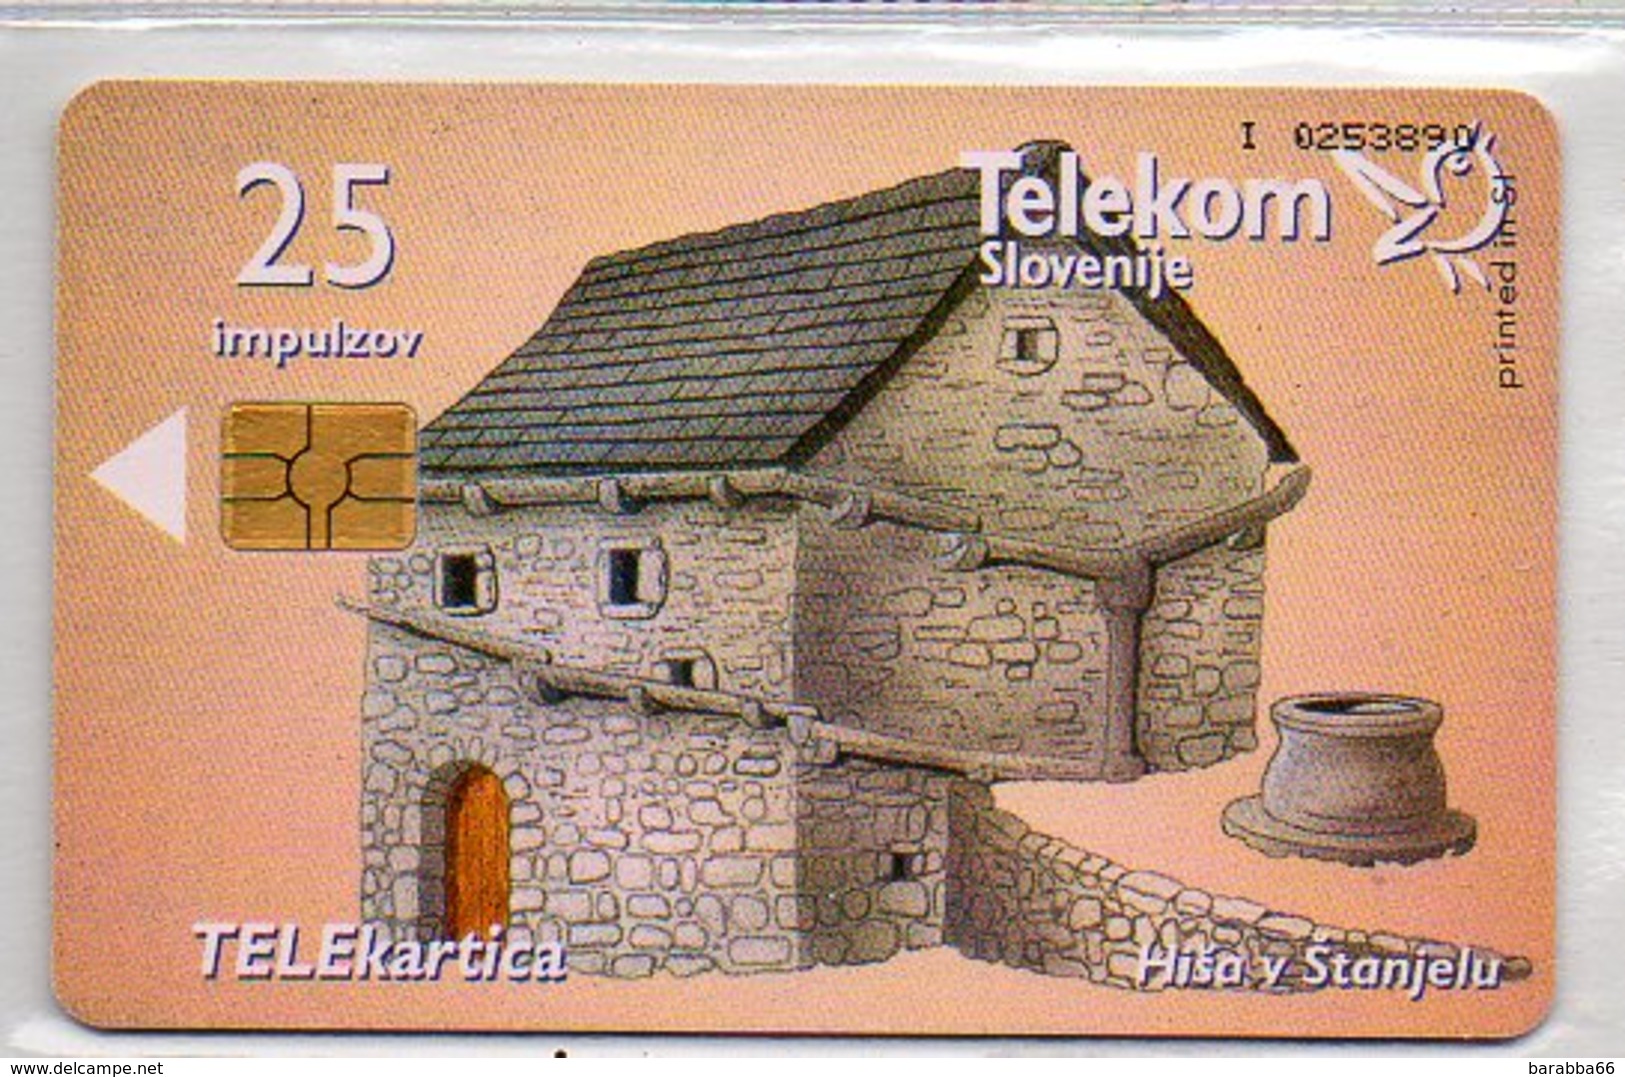 Telekom Slovenije - 25 Imp. - BUILDINGS - Slovenia